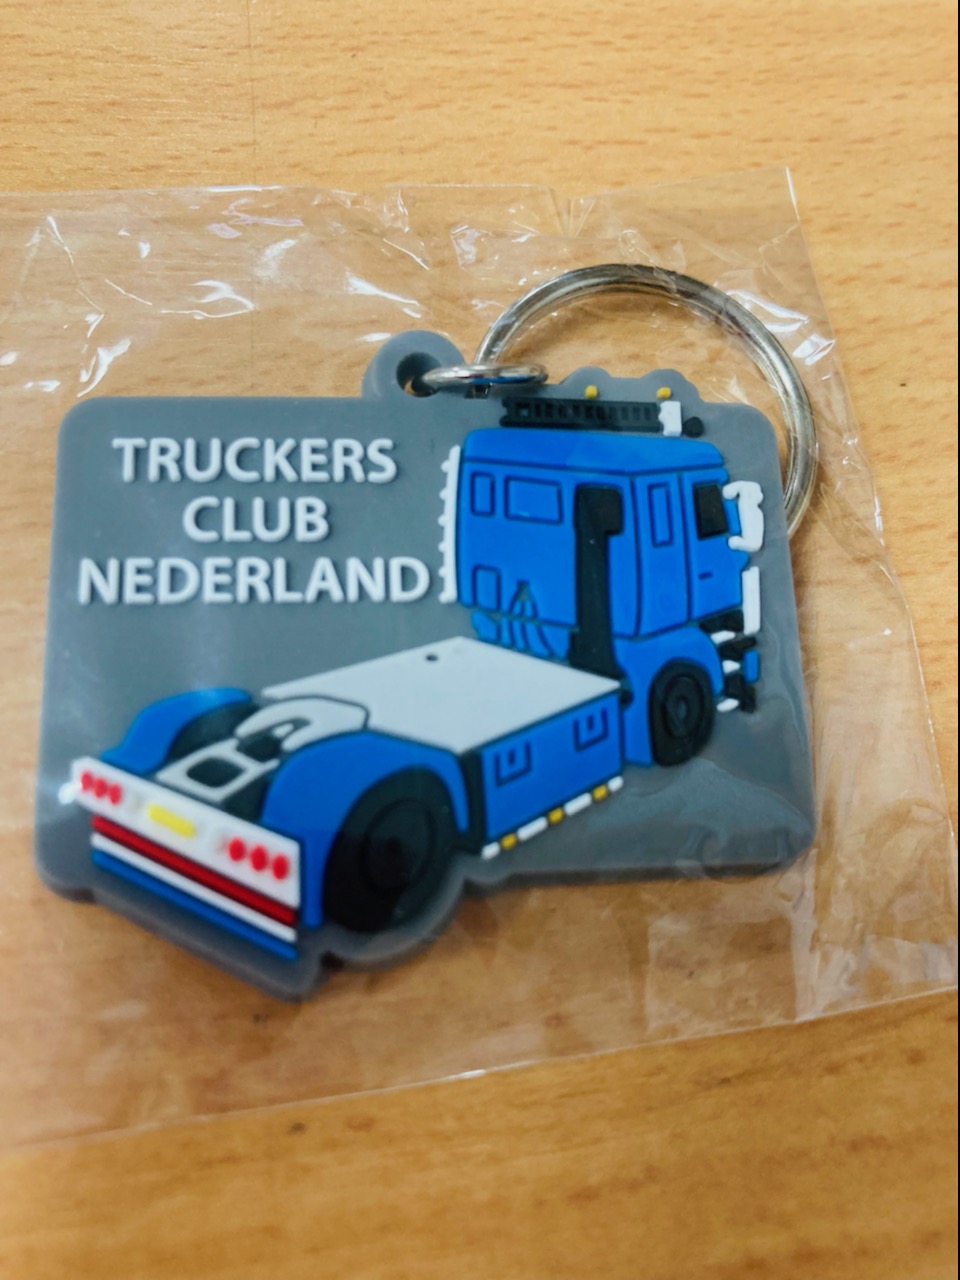 Porte clef truckers club nederland